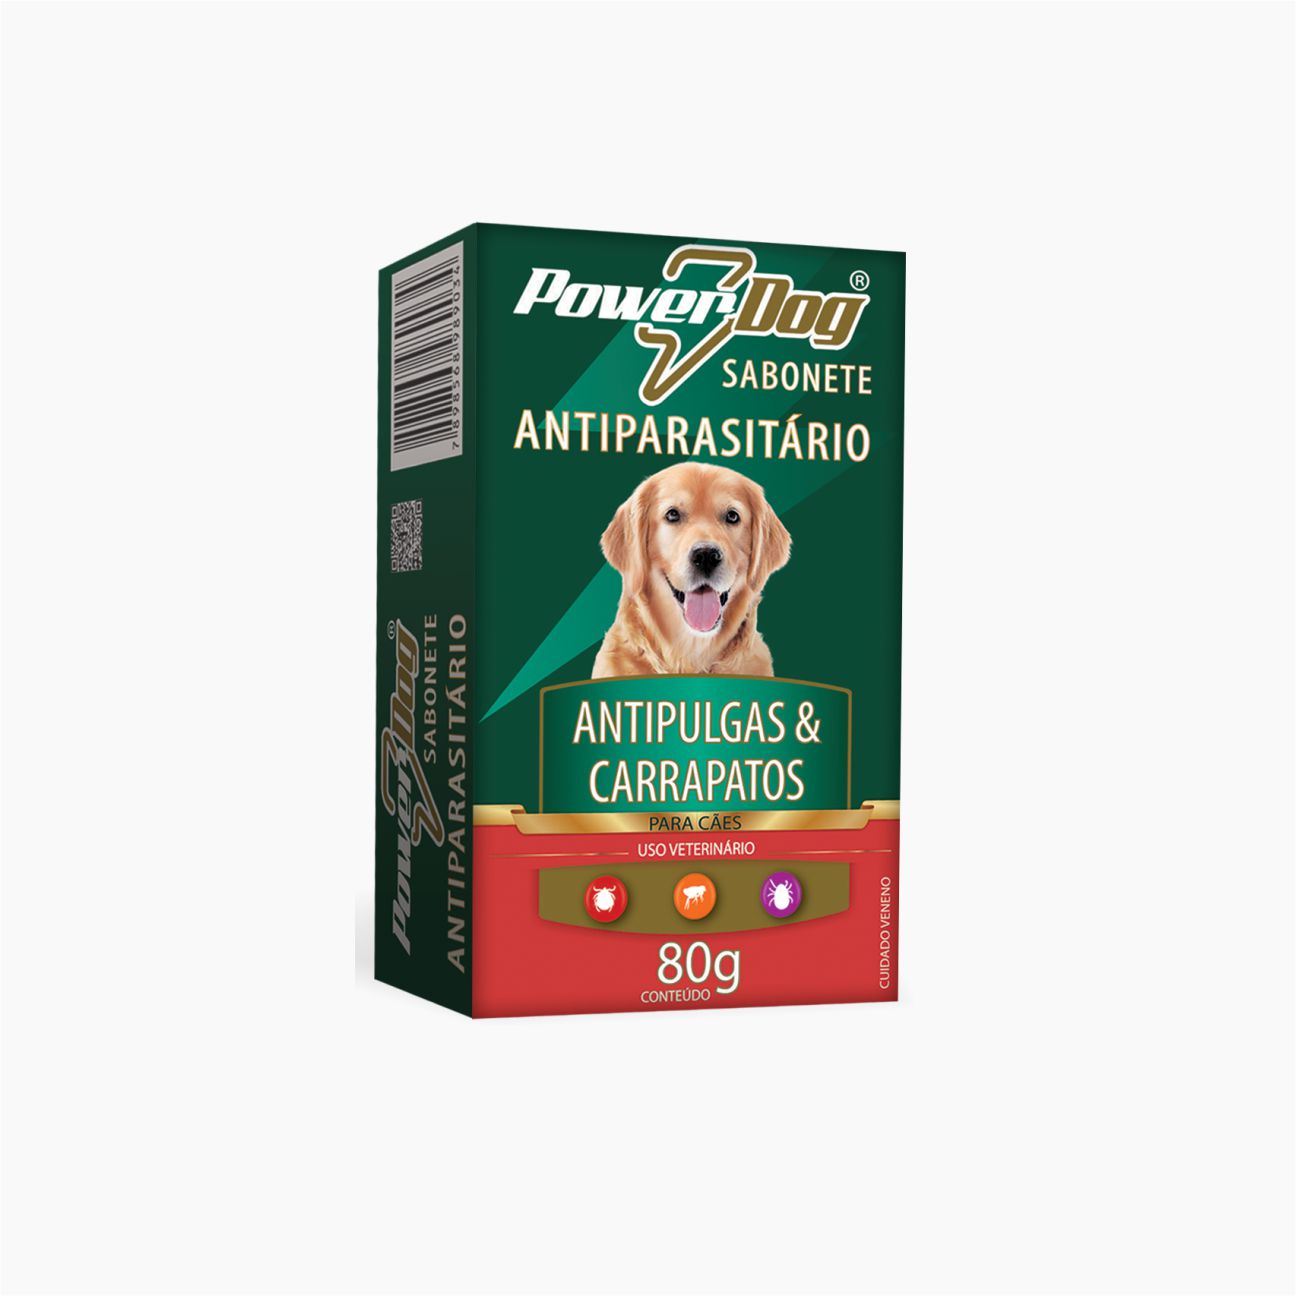 Sabonete Power Dog Antipulgas e Carrapatos